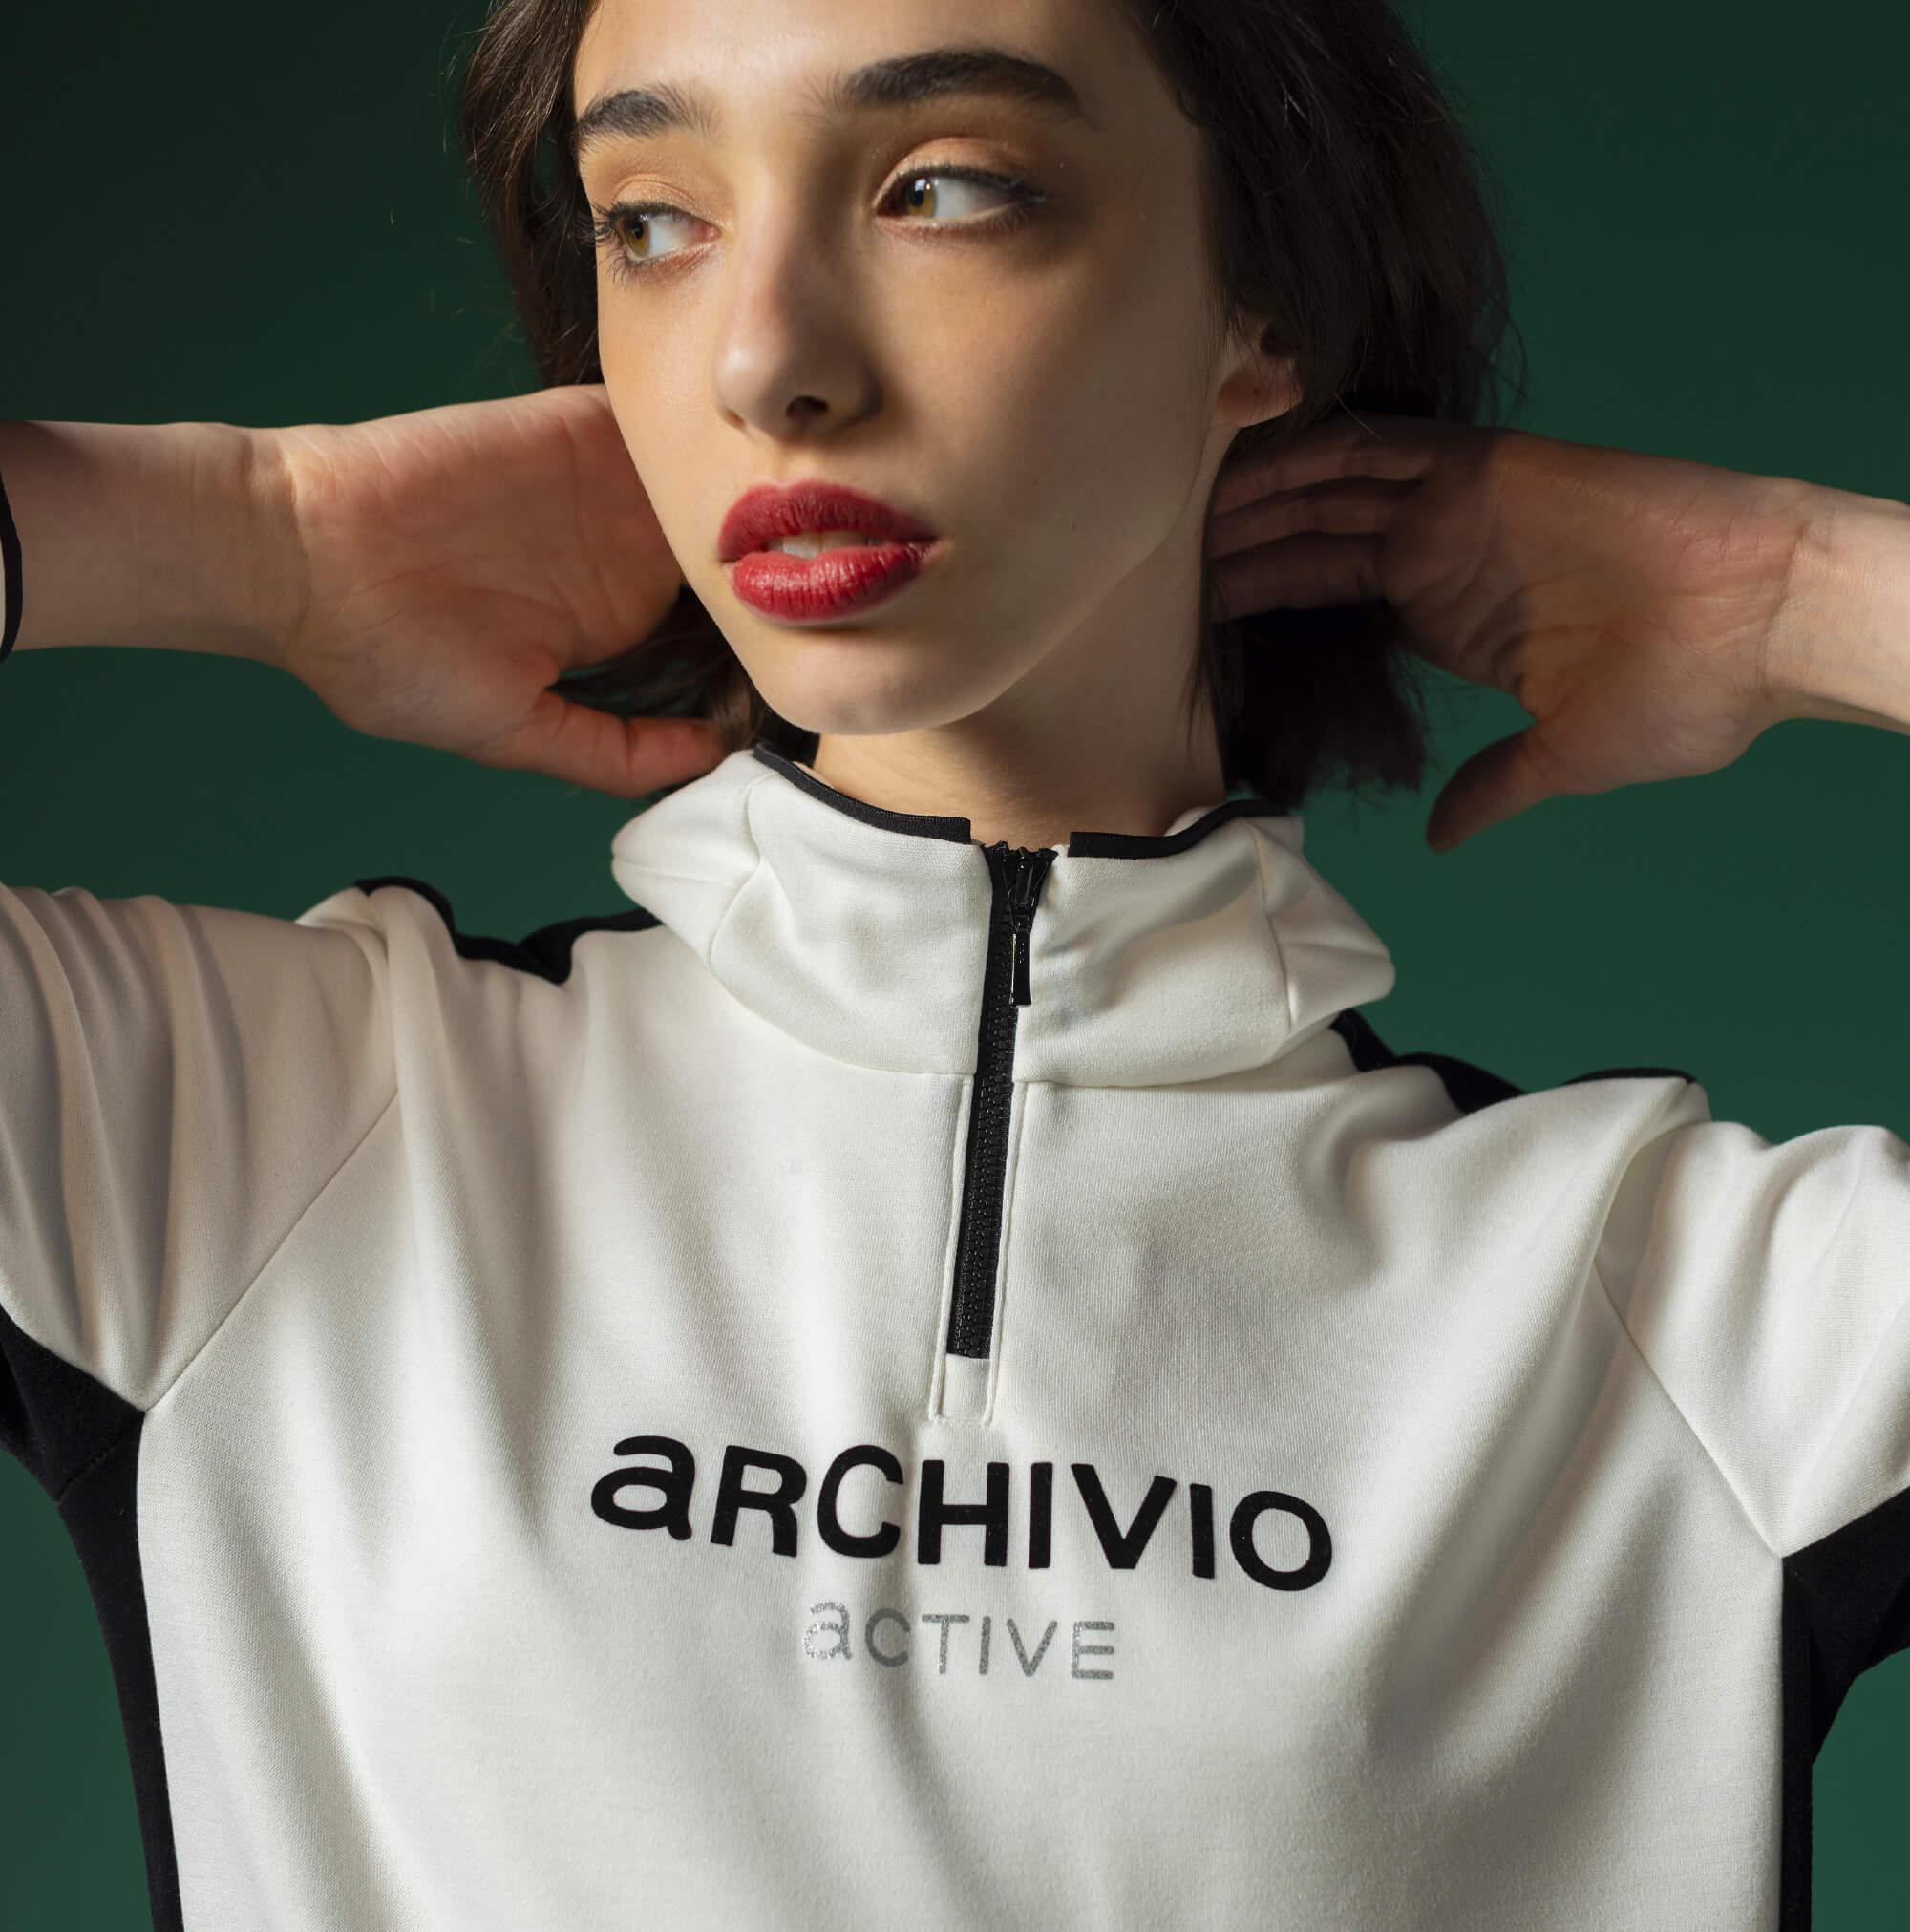 ARCHIVIO | archivio(アルチビオ)ブランドサイト